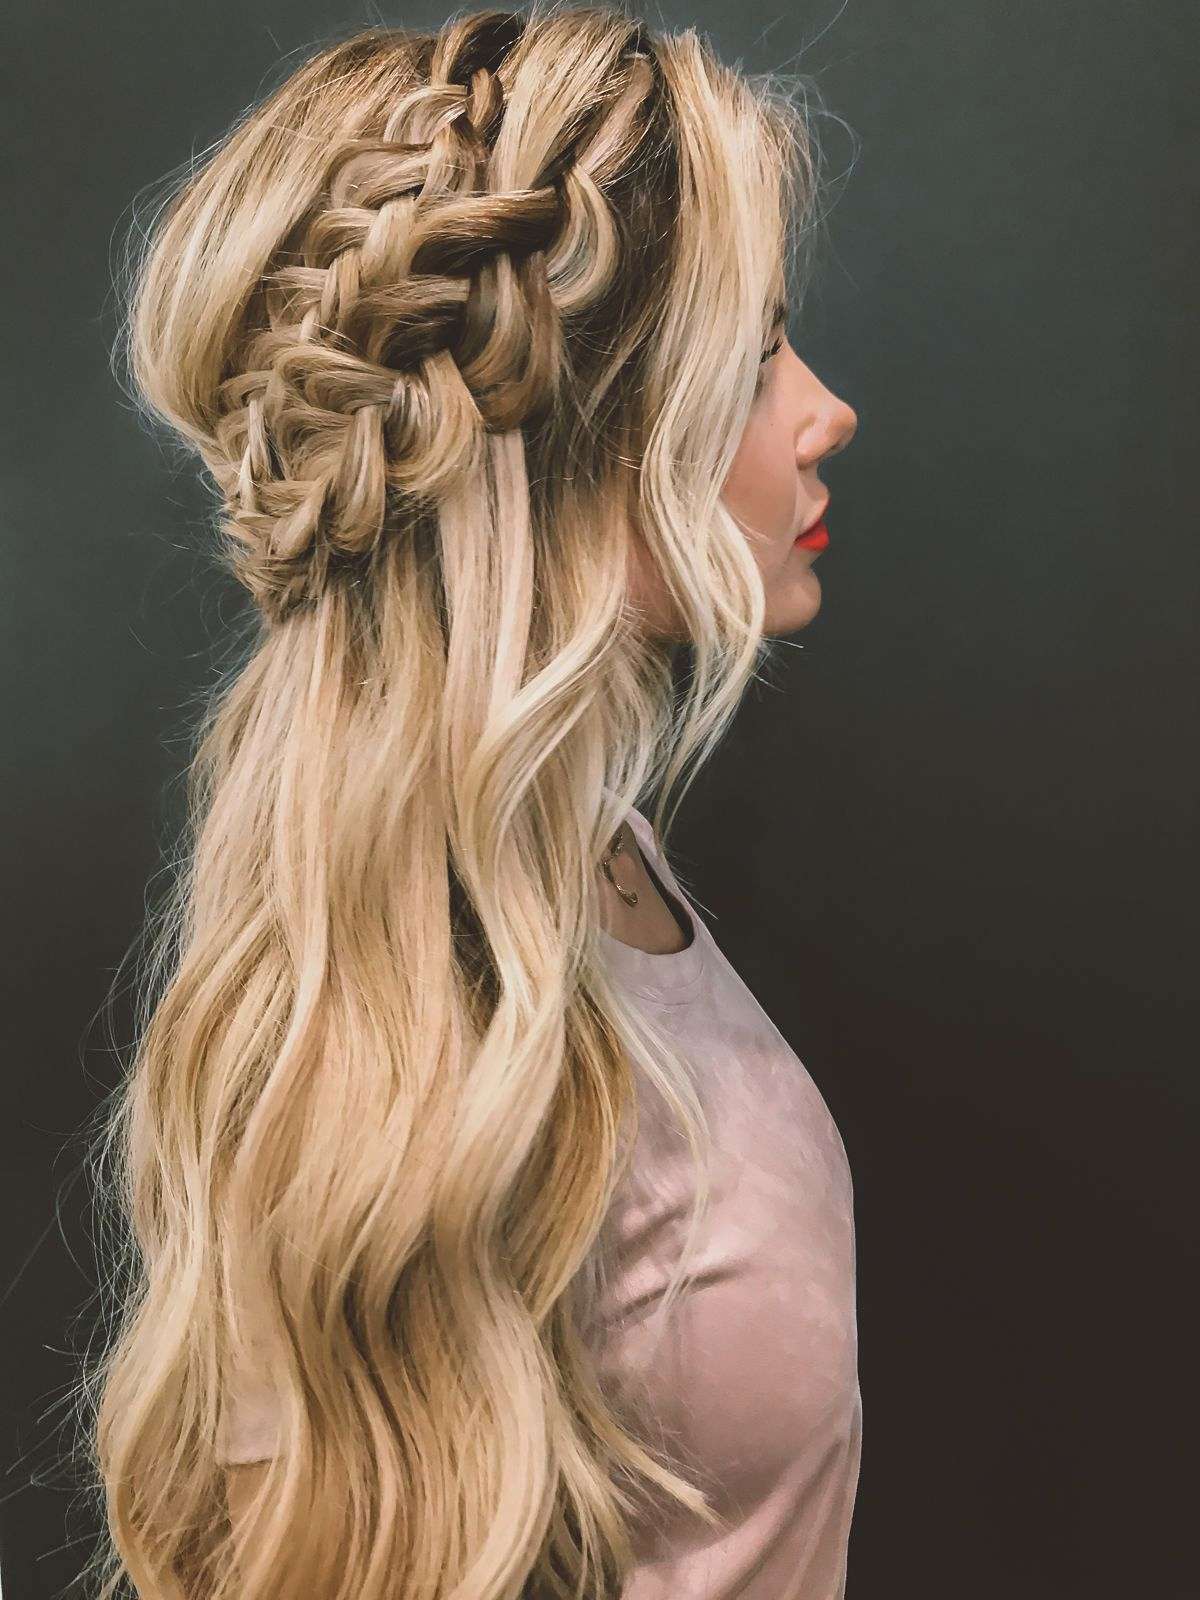 Прически на свадьбу на длинные волосы — 88 фото супер модных идей и вариантов